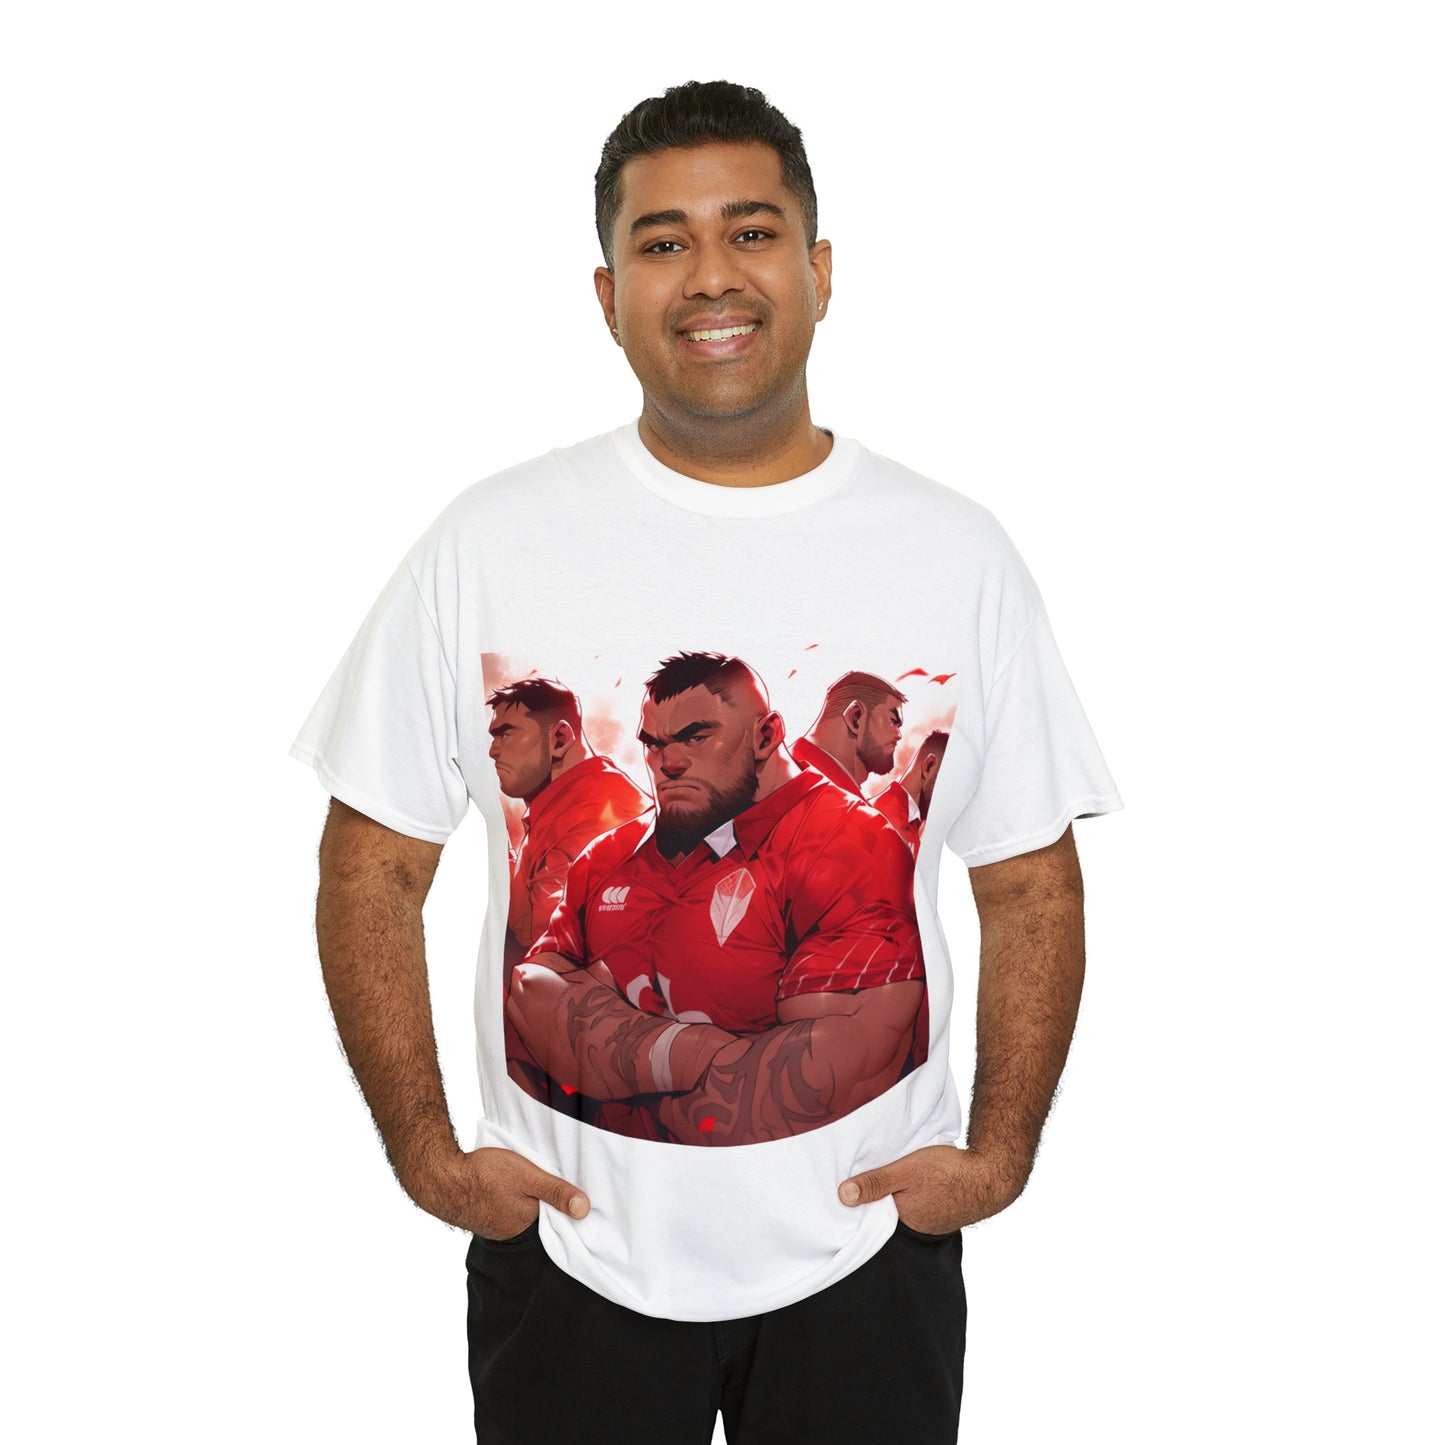 Ready Tonga - light shirts